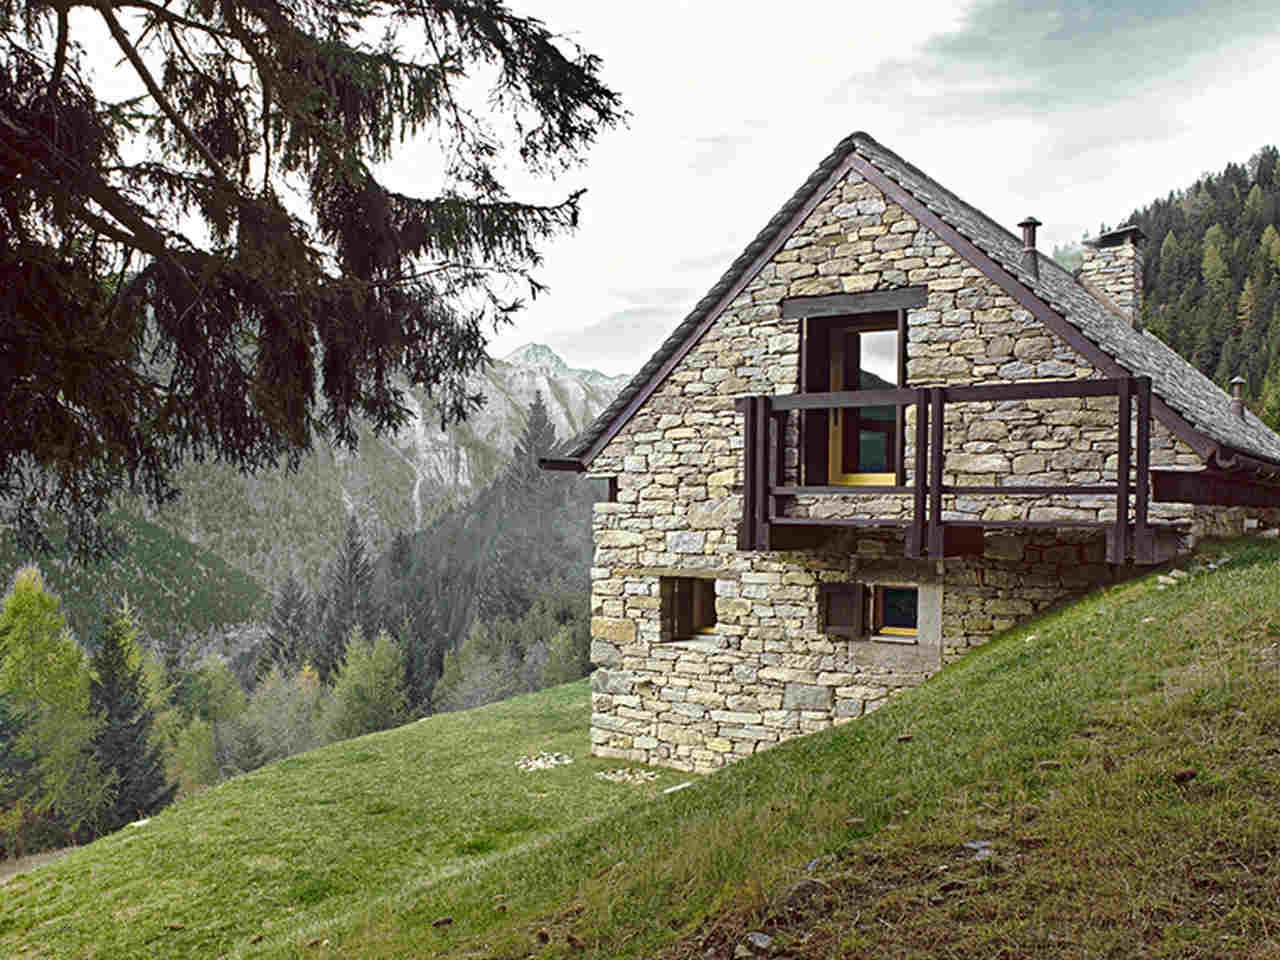 Doğanın içinde yazlık ev modelleri arasında sıralanan taş ev